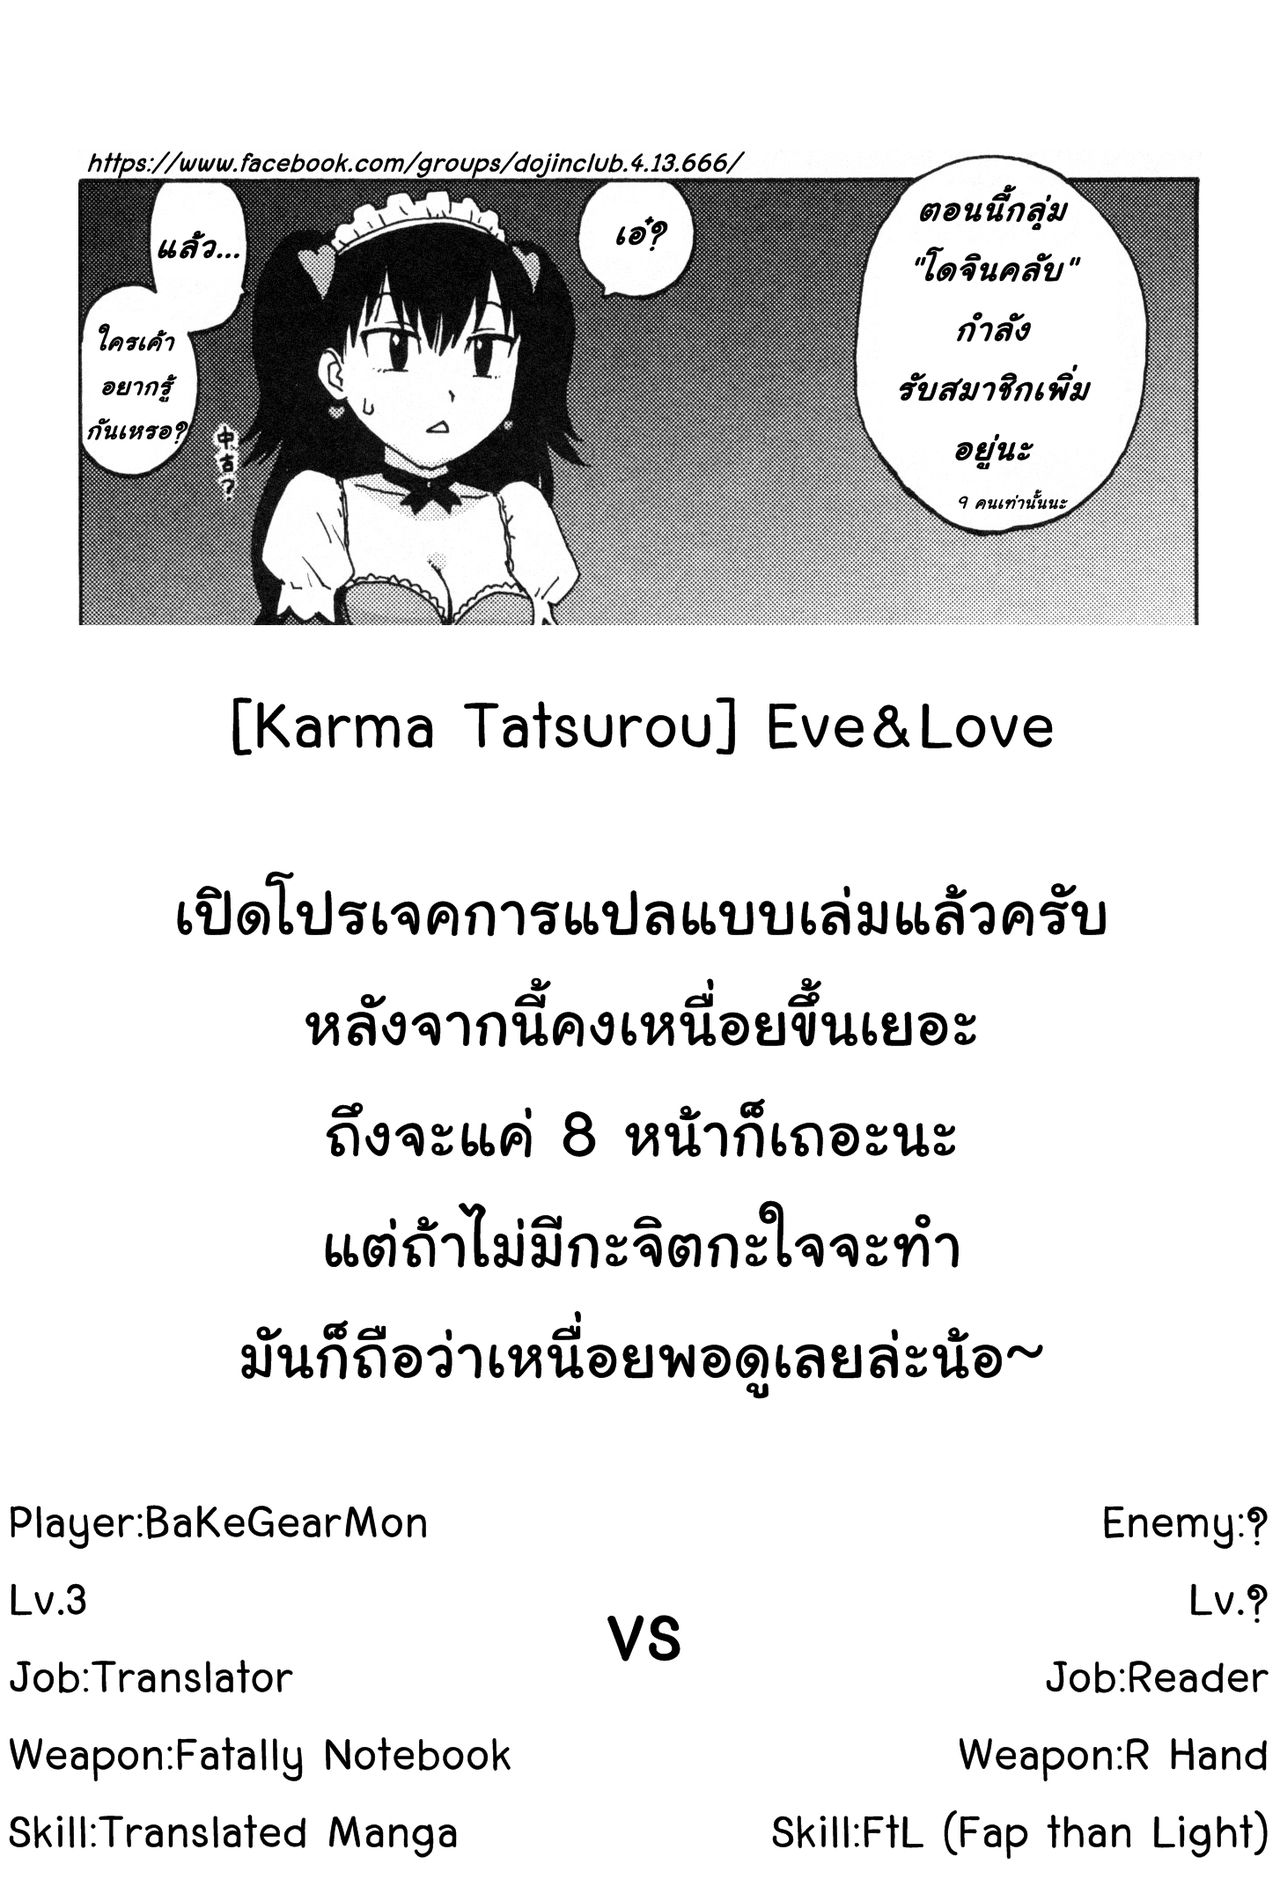 [Karma Tatsurou] Eve to Love – Eve and Love, The Mechanical sweethearts 1 (1)9